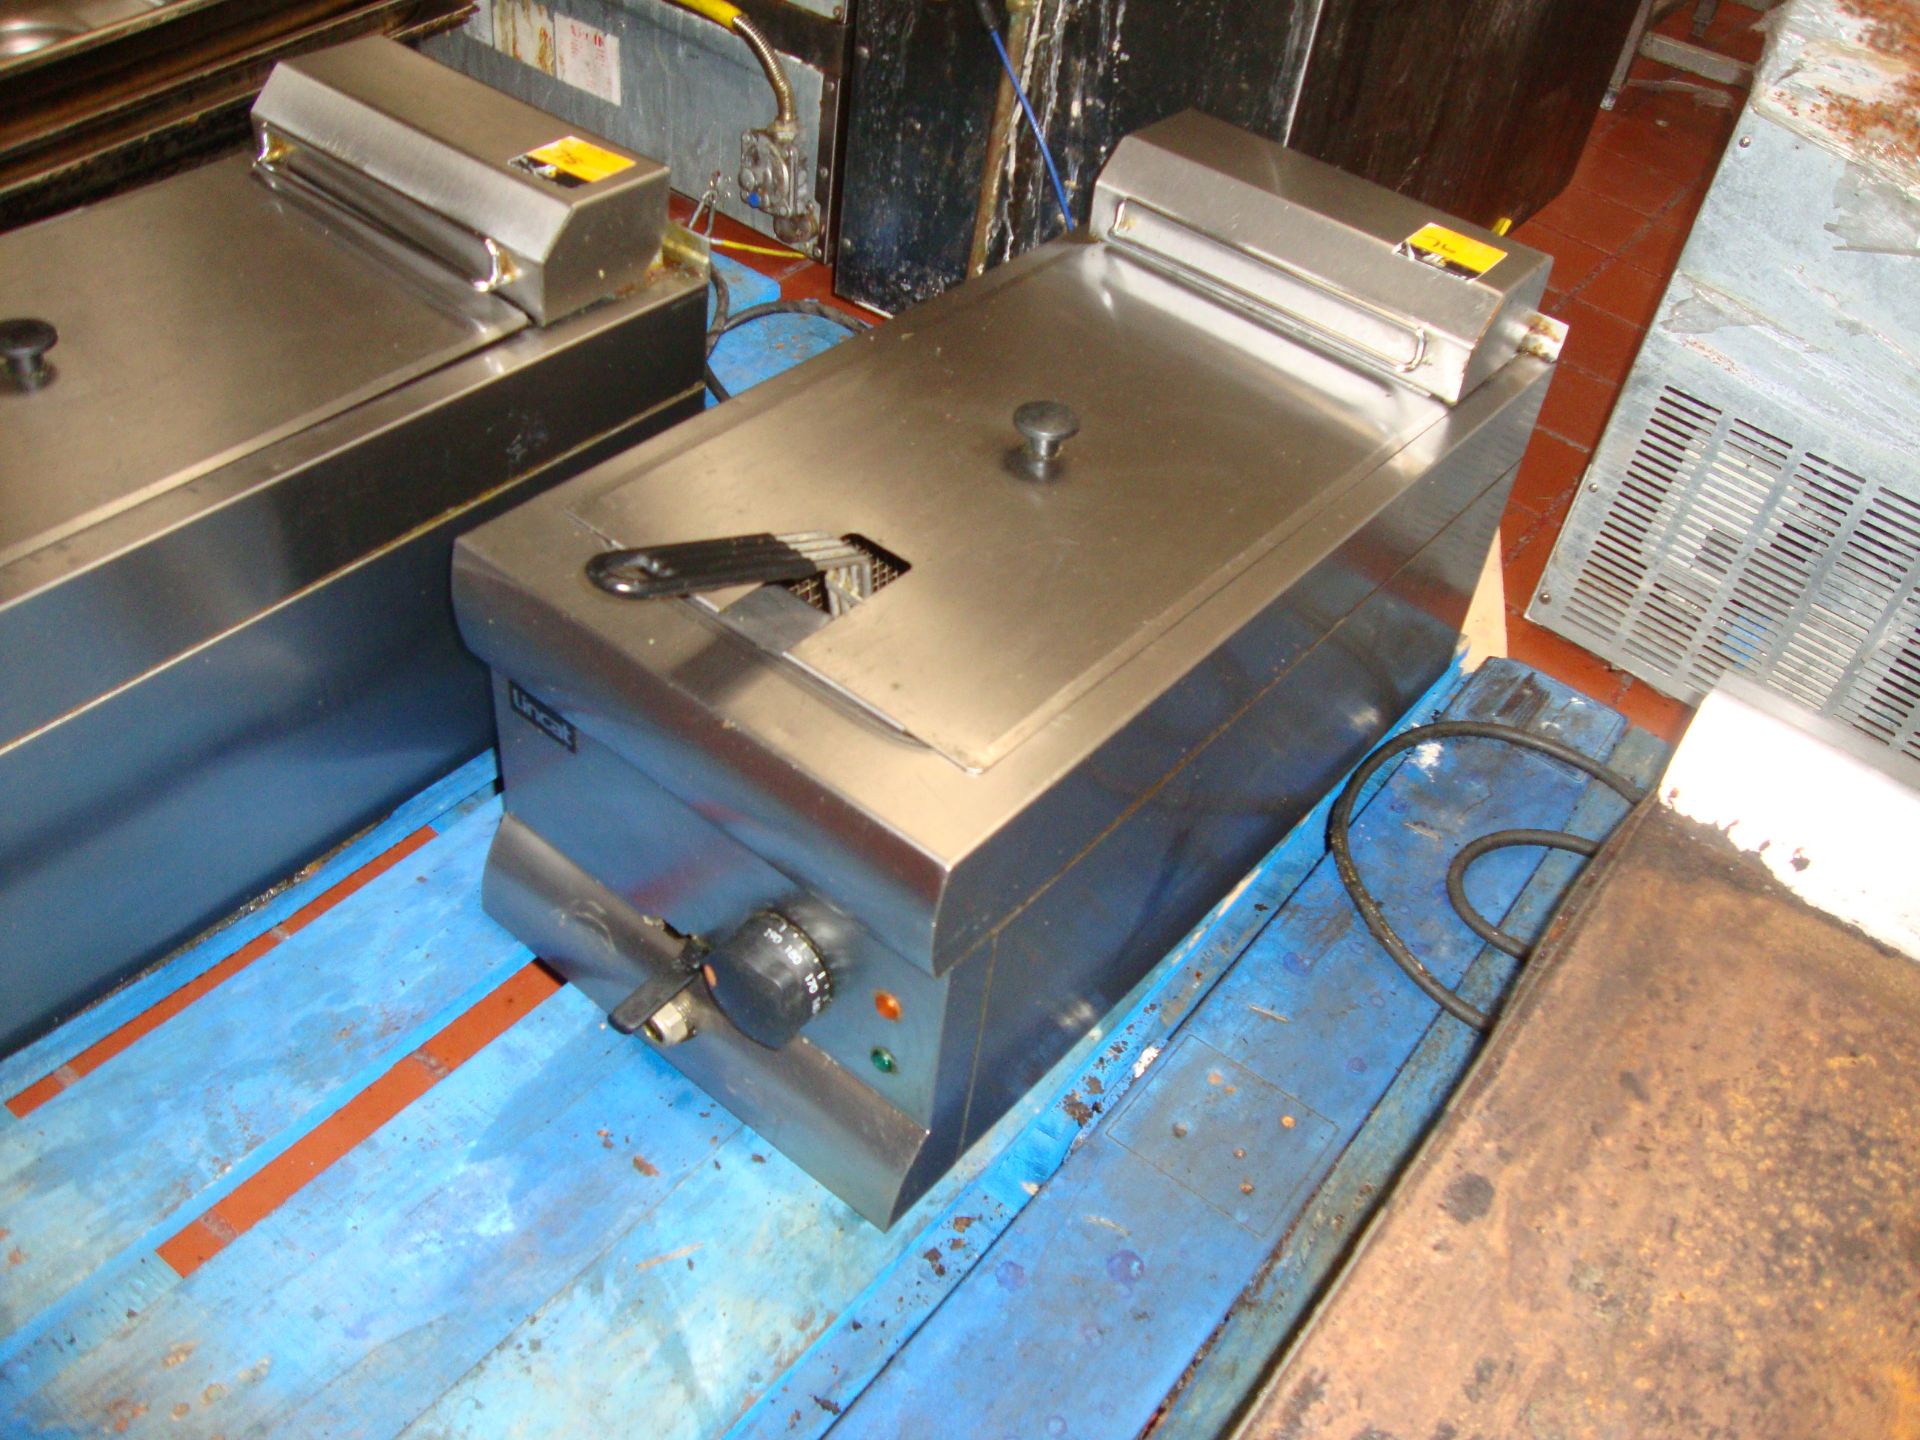 Lincat DF33 bench top stainless steel deep fat fryer